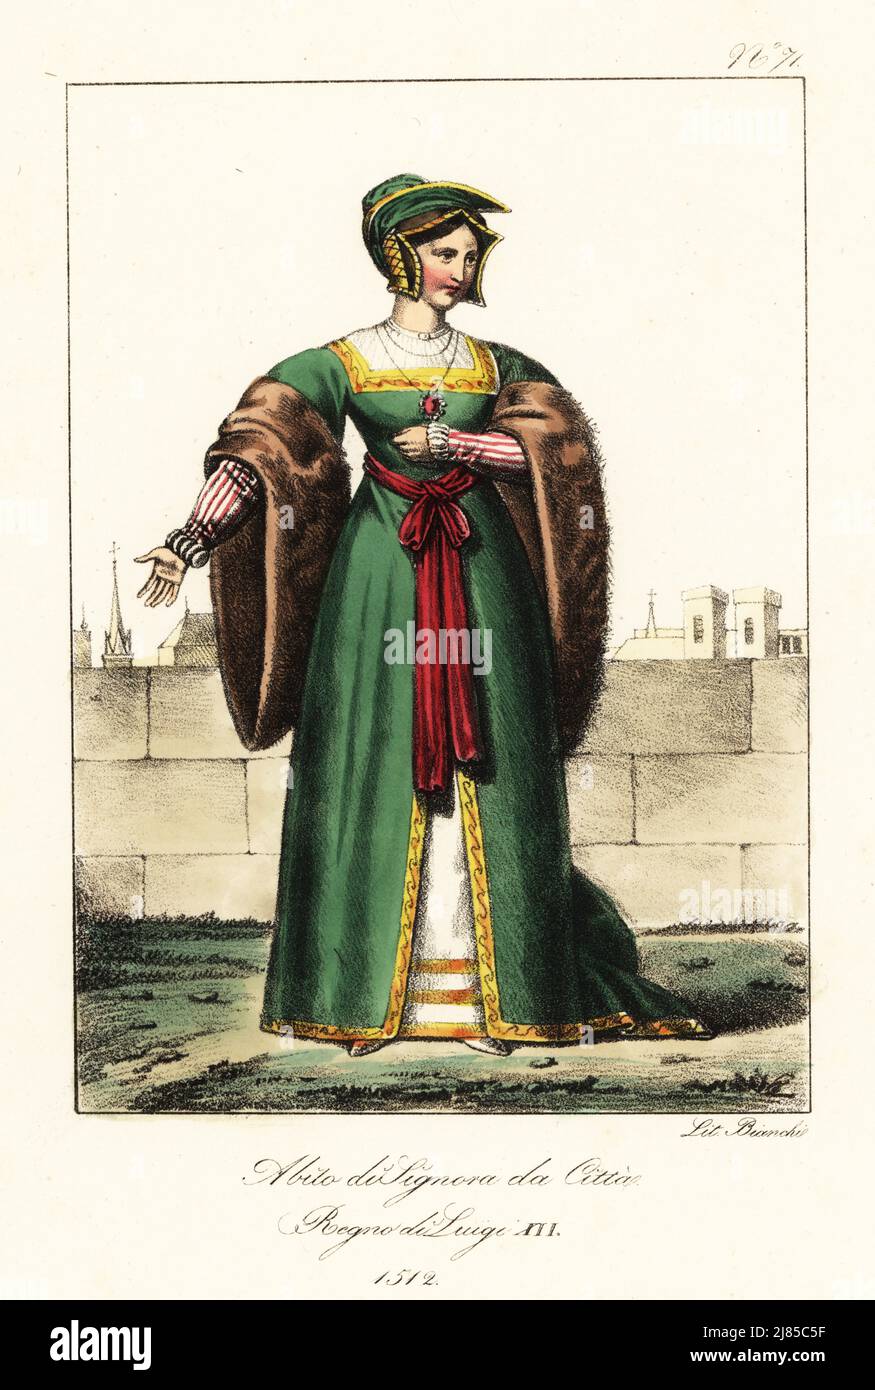 Mujer burguesa francesa, reinado del rey Luis XII, 1512. En hedial hedial,  bata verde con mangas de piel completa, cinturón rojo de guillotina, falda  blanca. Traje de dame a la ville. Regne